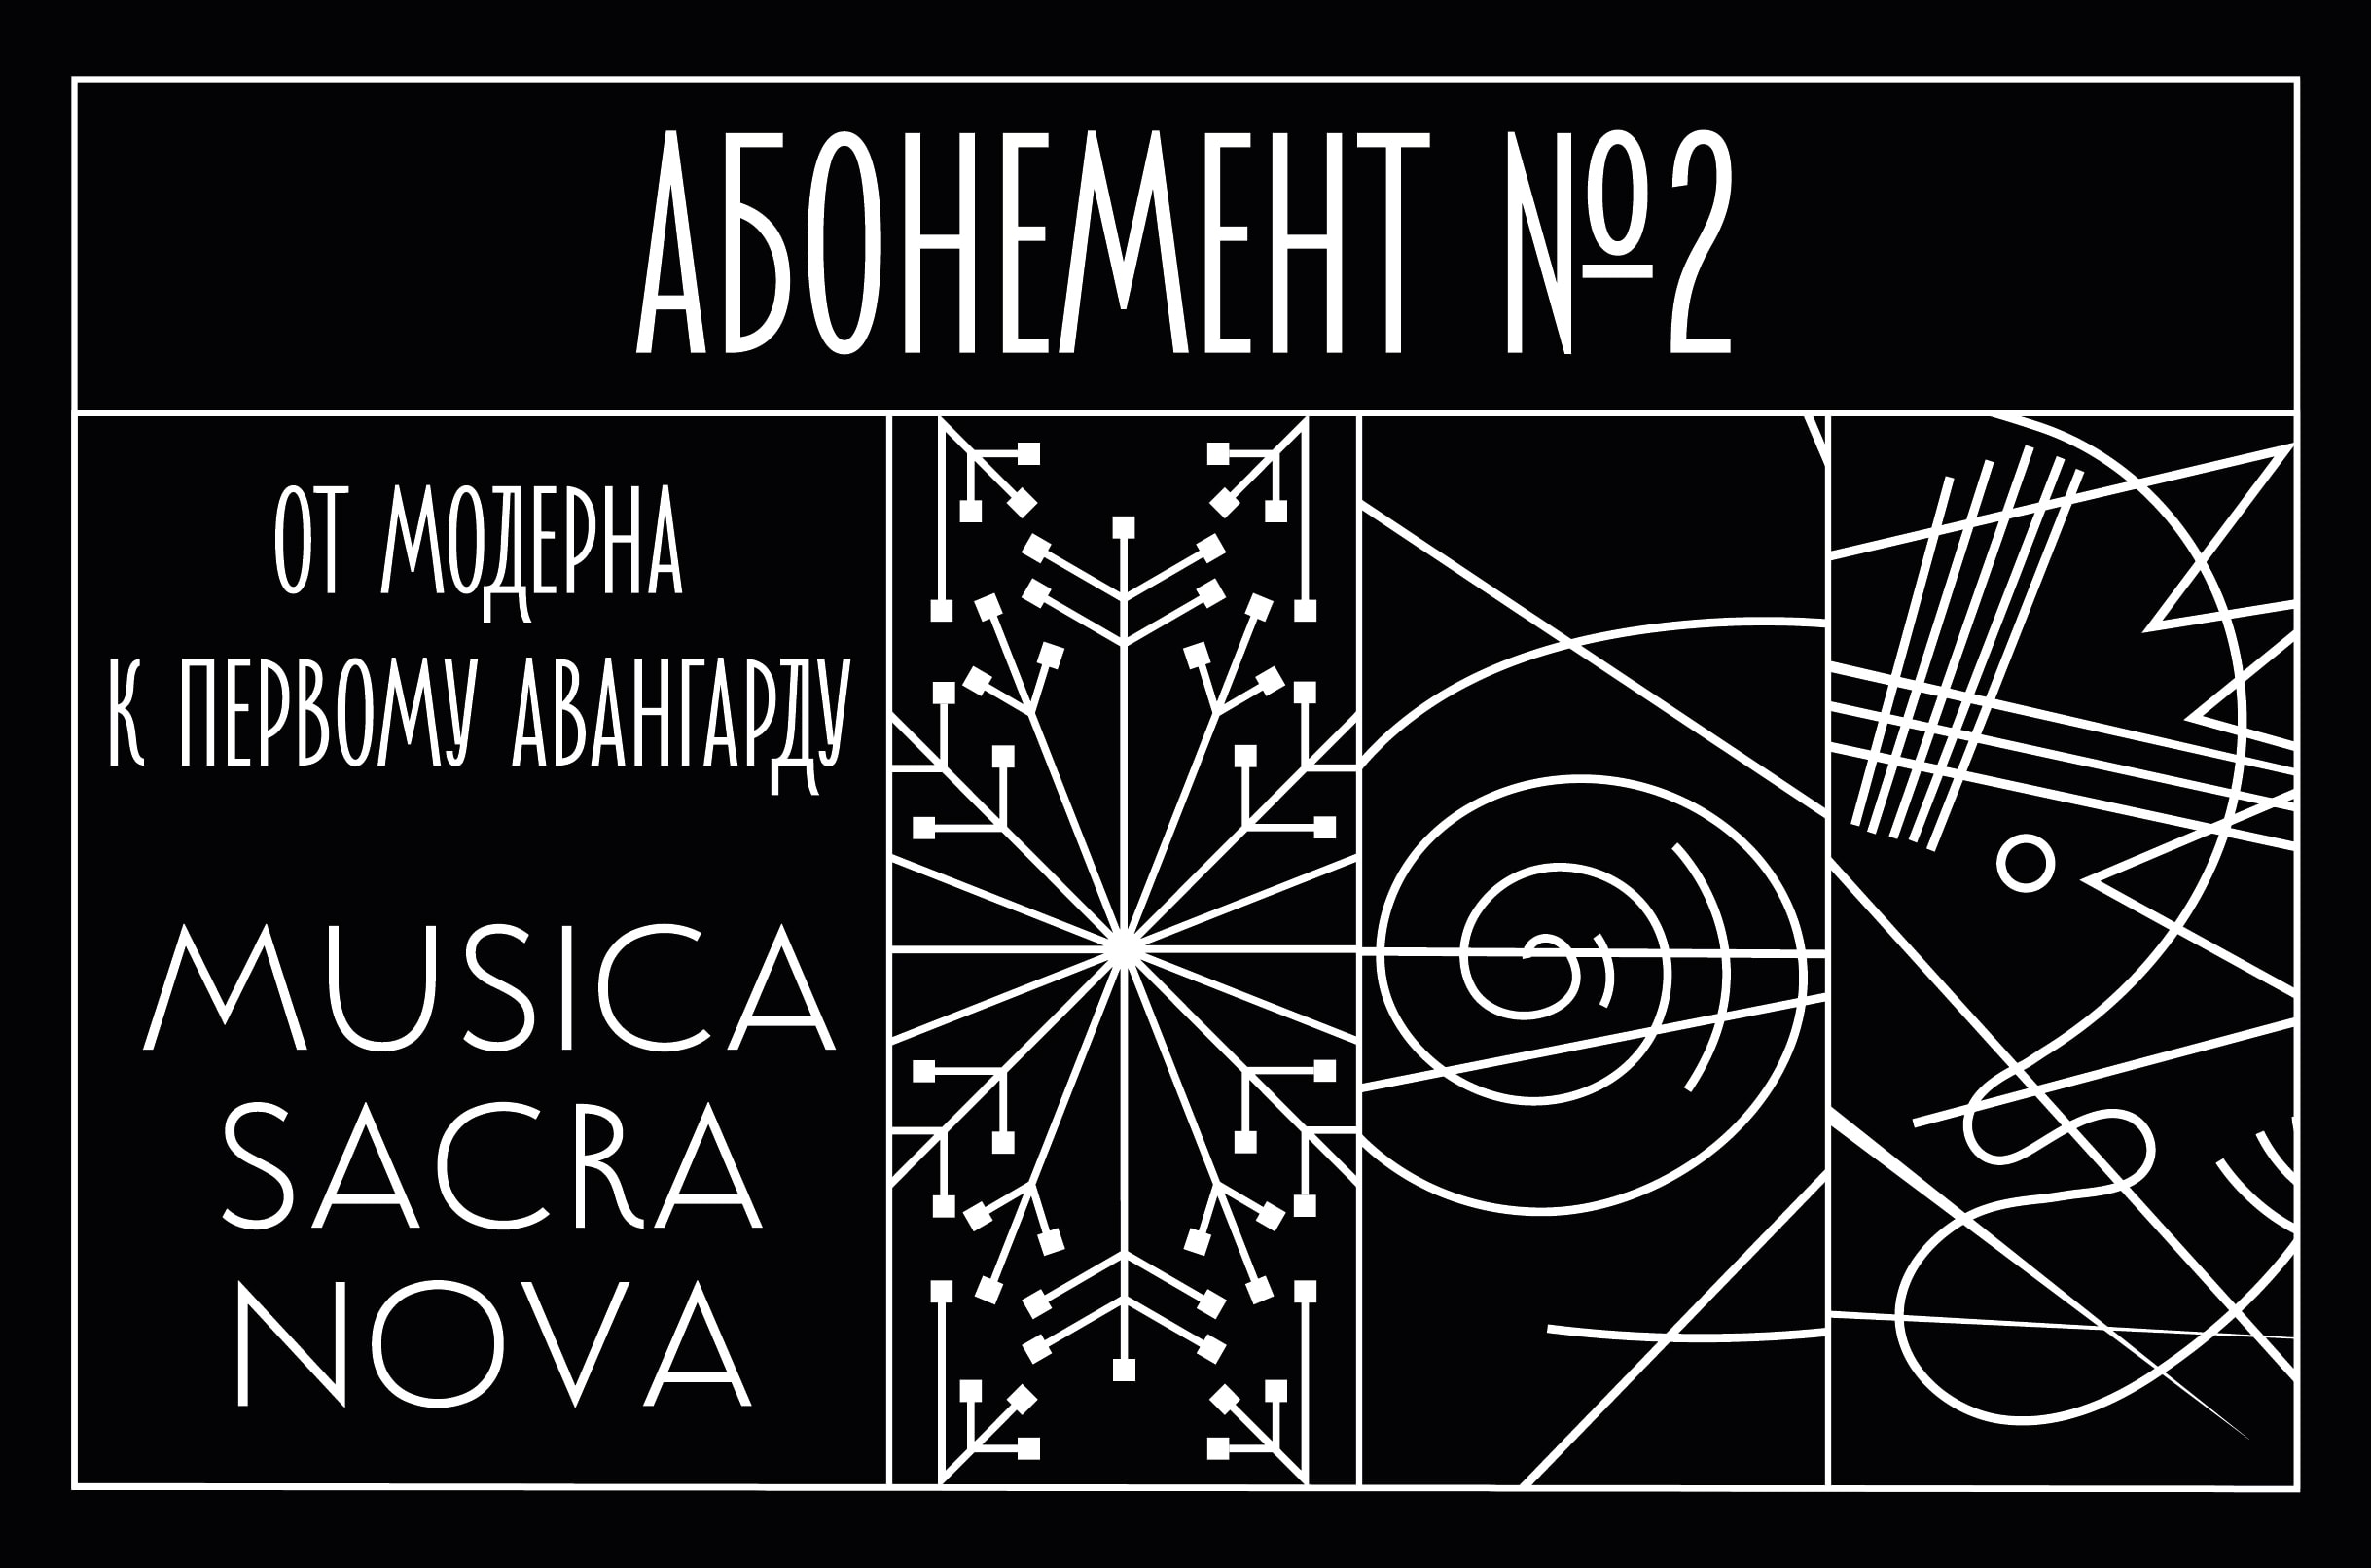 Лаборатория Musica sacra nova открывается в Московской филармонии